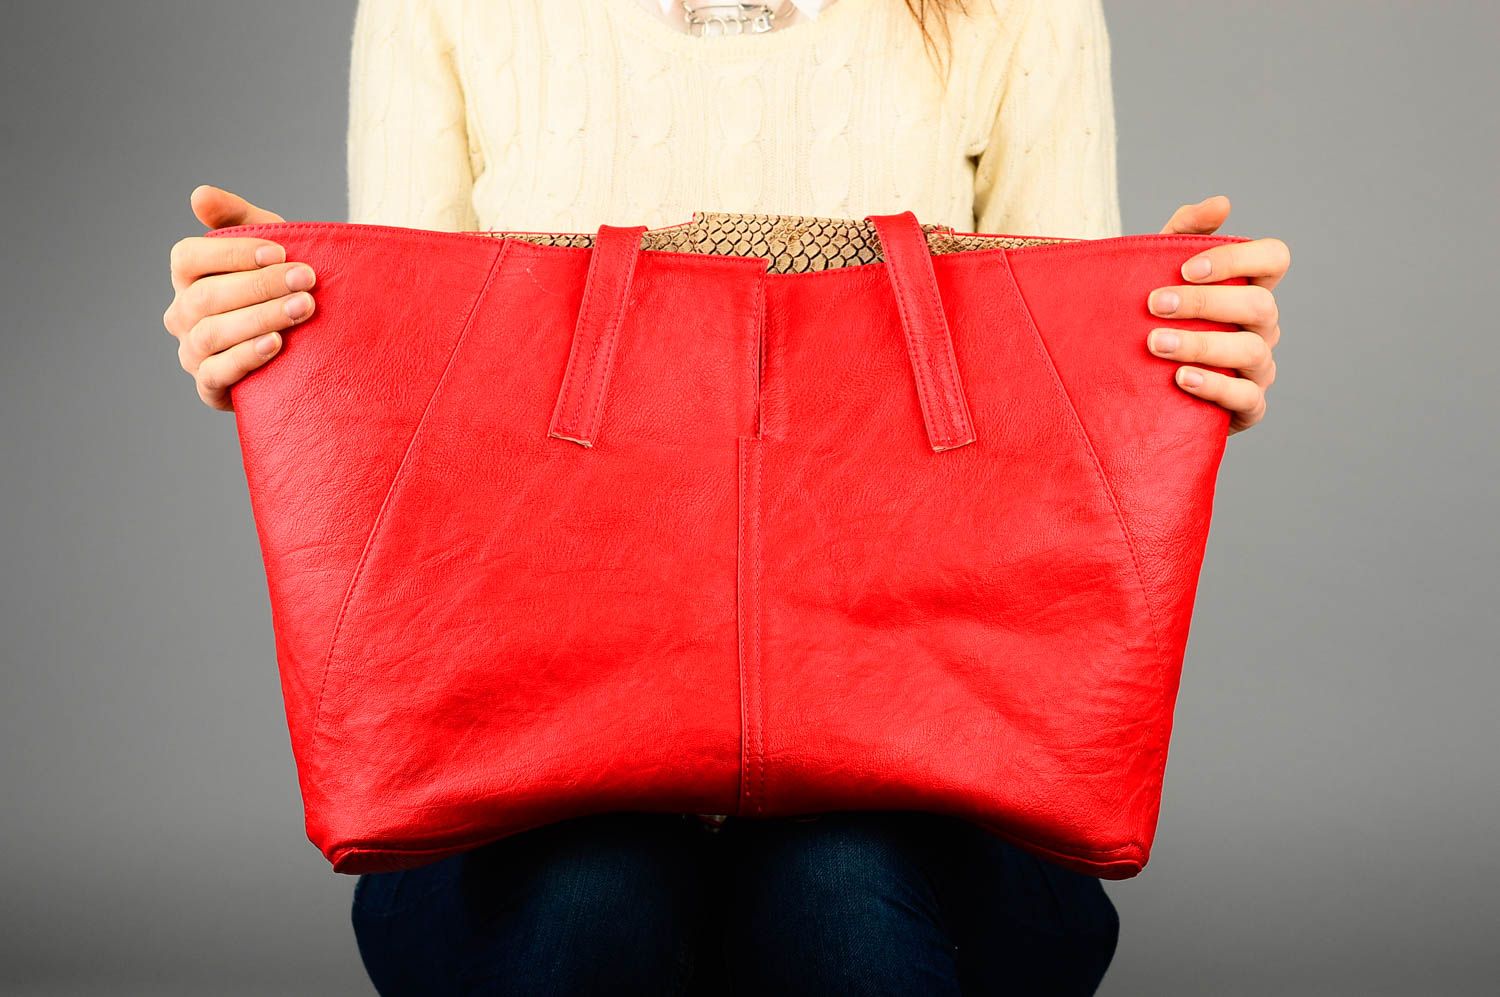 Сумка ручной работы сумка на плечо из кожзама женская сумка красная стильная фото 2